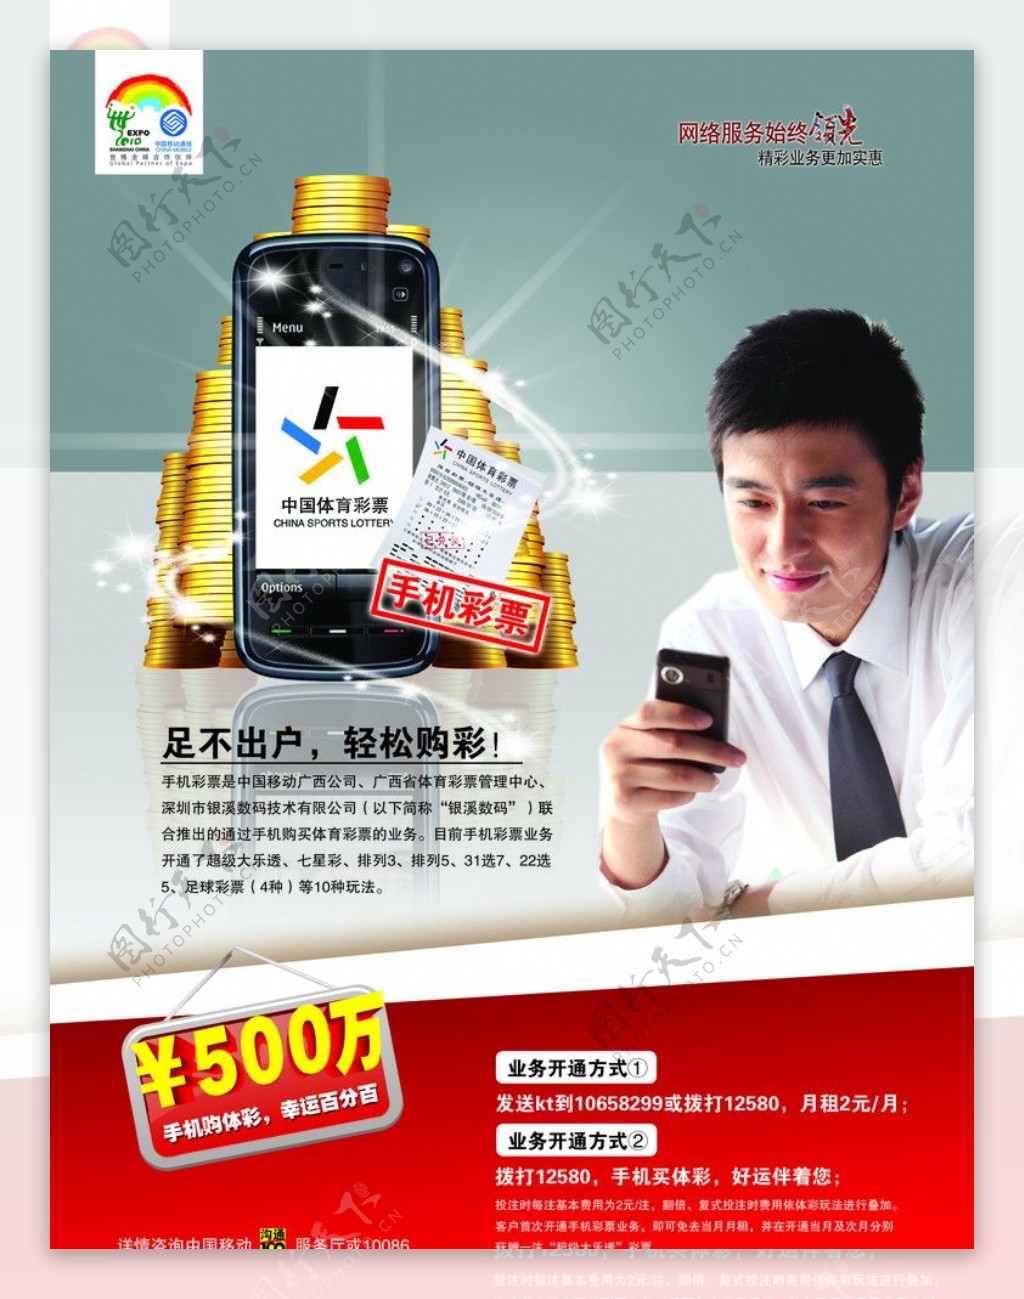 中国移动手机支付彩票图片